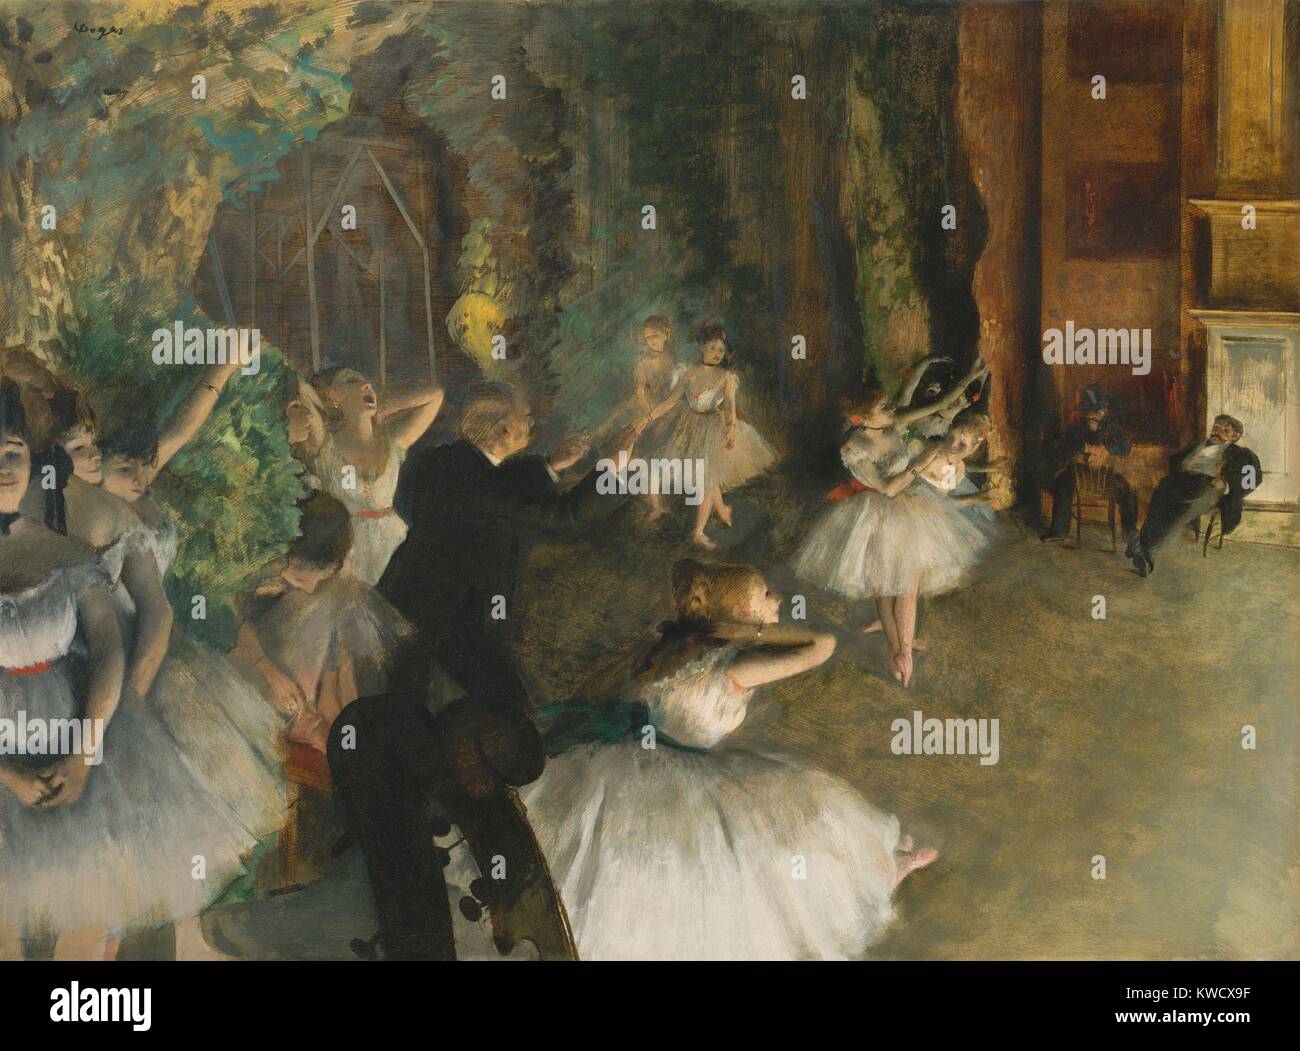 Generalprobe des Ballett auf der Bühne, von Edgar Degas, 1874, französischer Impressionisten mixed media Zeichnung. Ballerinas stehen in natürlichen Körperhaltungen offstage, während Männer die Tänzer auf der Bühne beobachten. Es gibt amüsante 7/8 Violine blättert an der unteren, linken (BSLOC 2017 3 103) Stockfoto